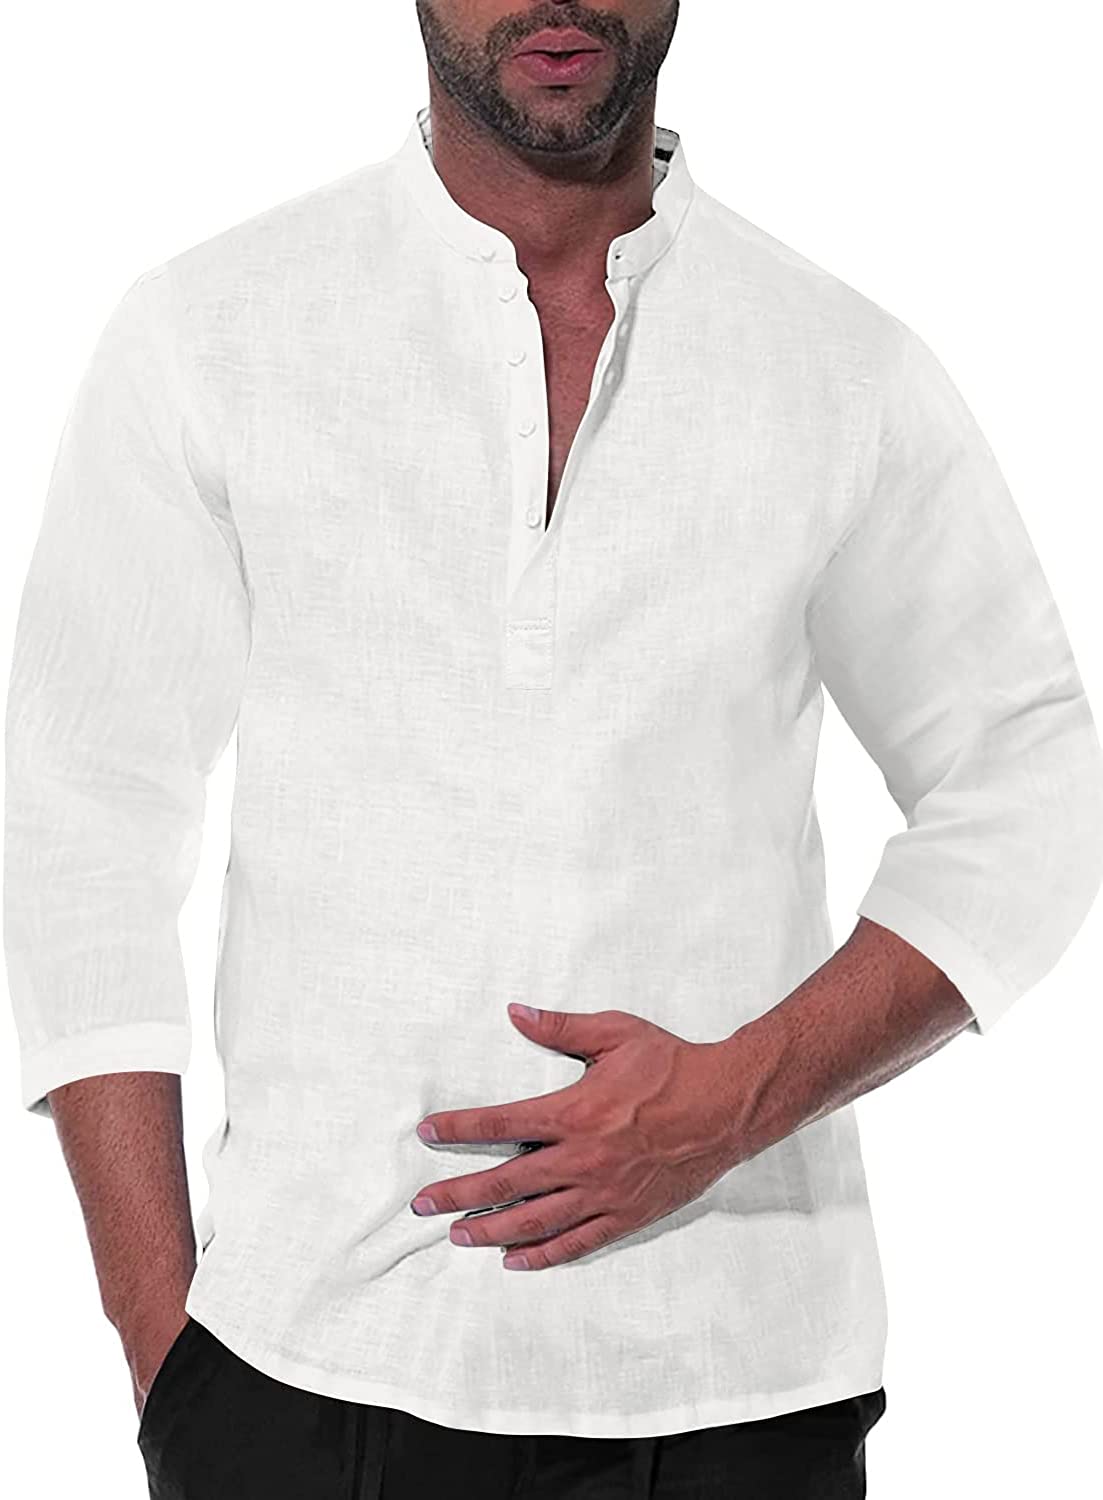 Karlywindow Mens Linen Henley Shirts Long Sleeve Hippie Yoga Summer Beach Casual Henleys T-Shirt 